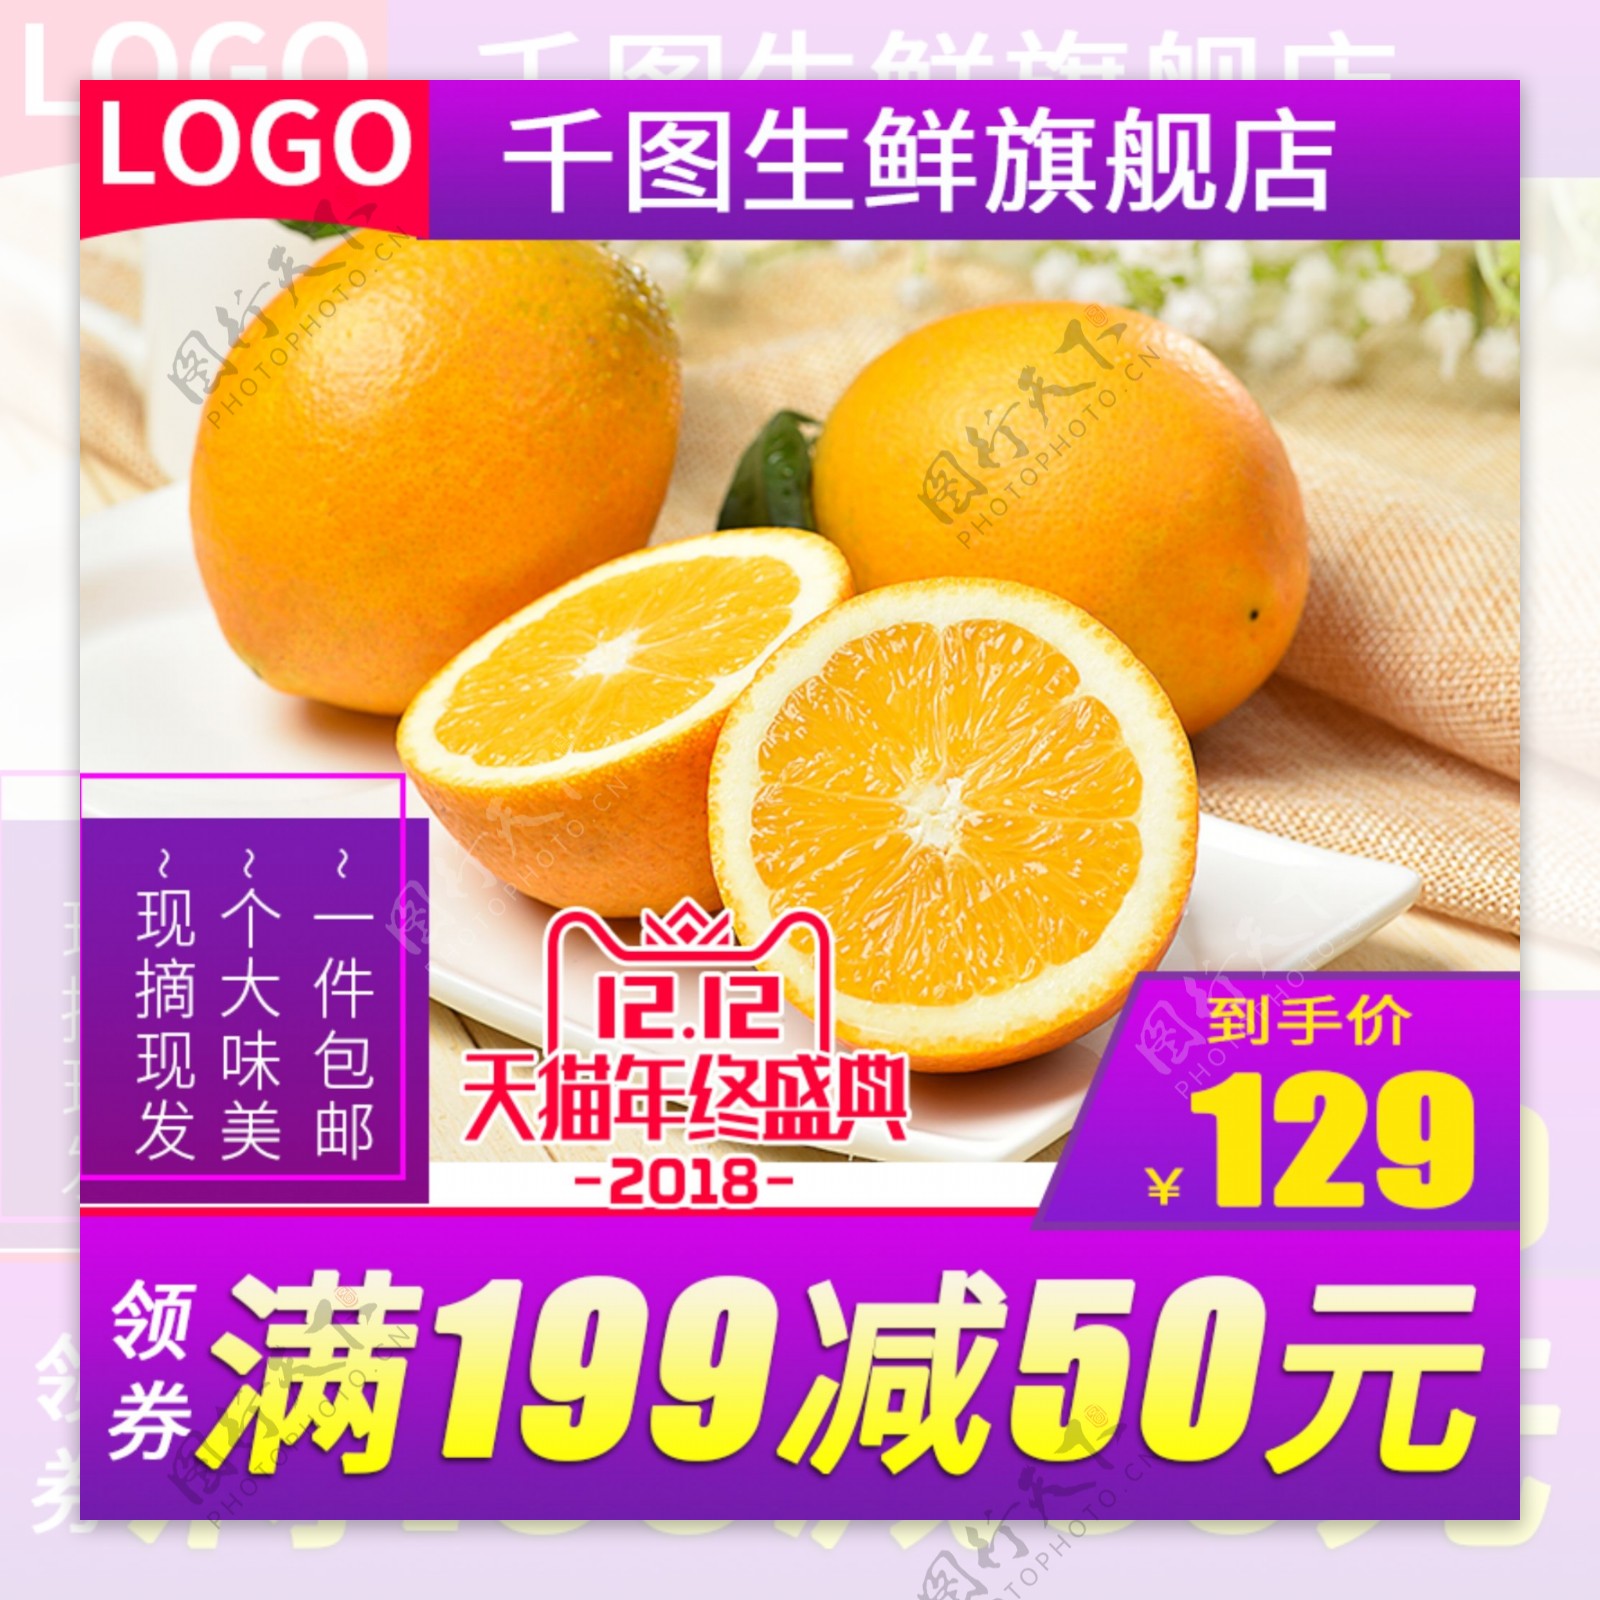 双12电商淘宝橙子水果生鲜主图直通车